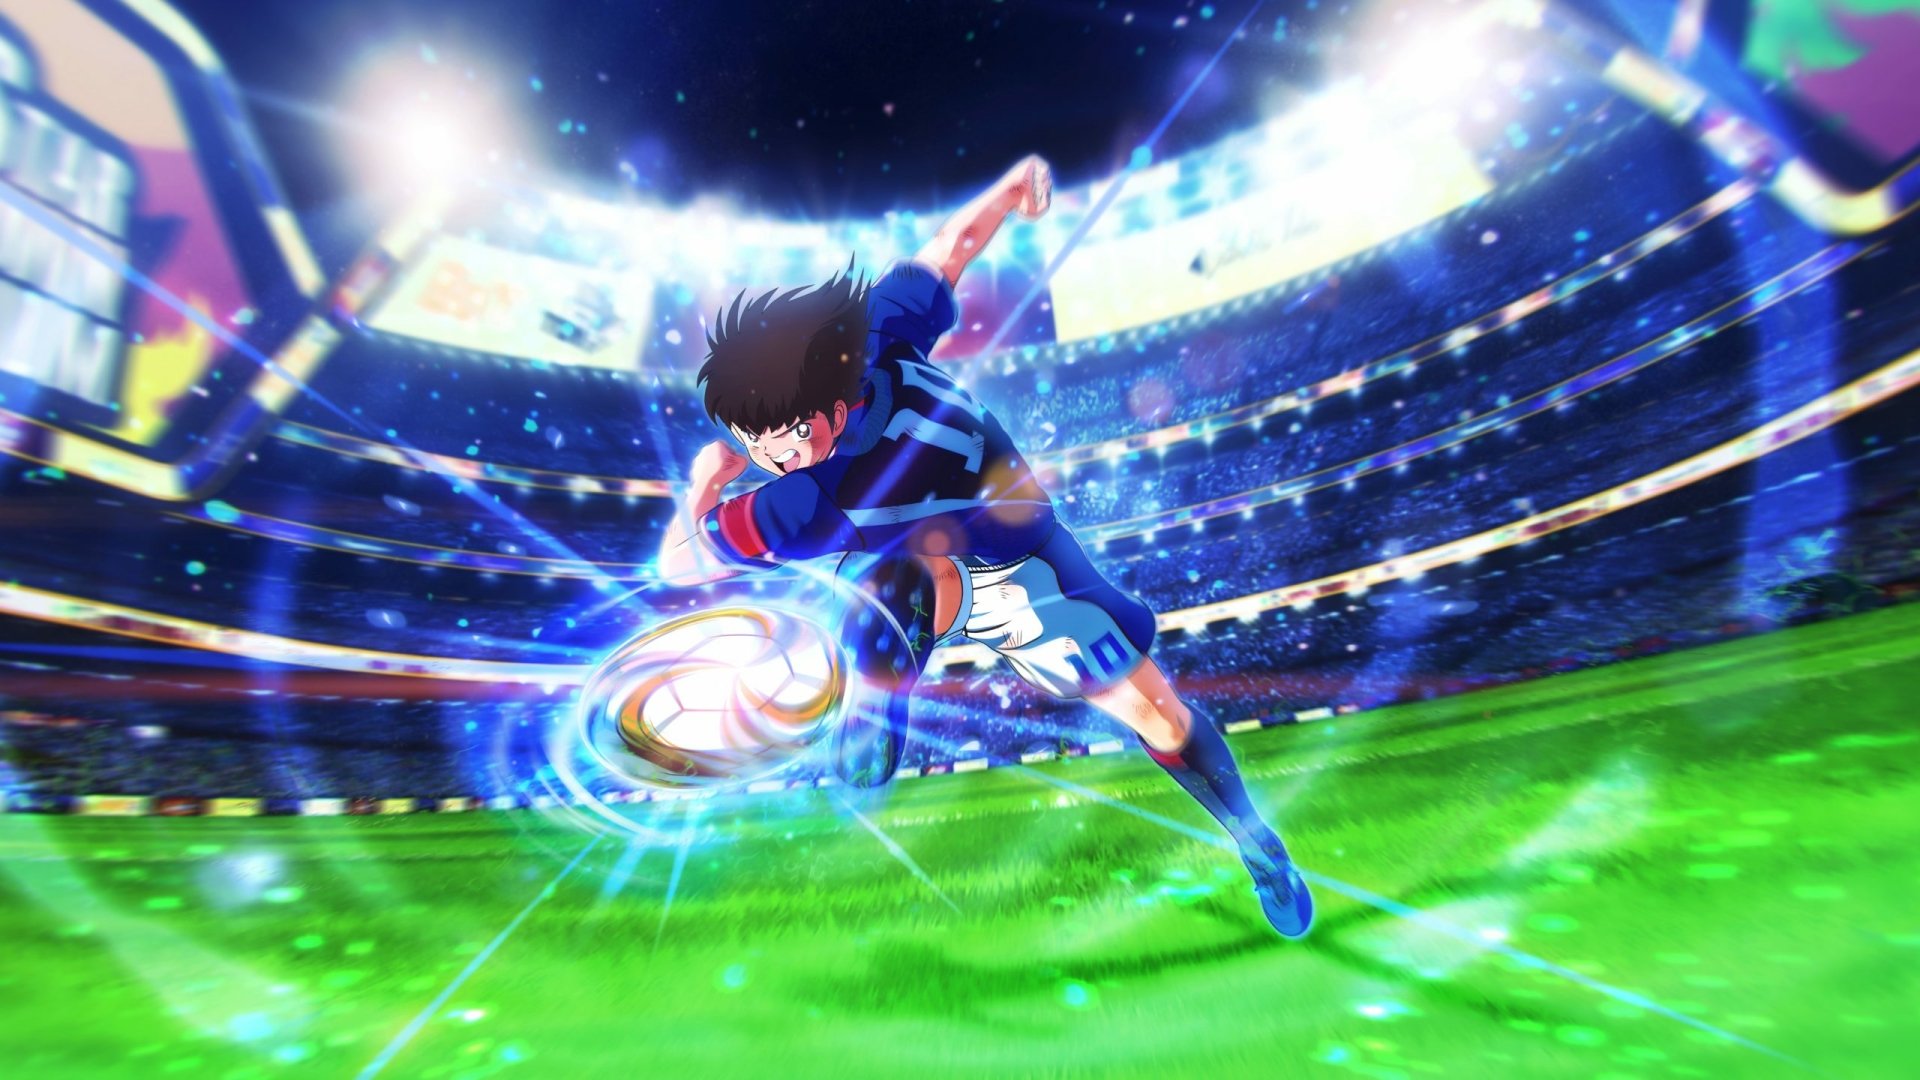 Tsubasa bộ truyện tranh thay đổi cả nền bóng đá Nhật Bản  Bên lề sân cỏ   Việt Giải Trí